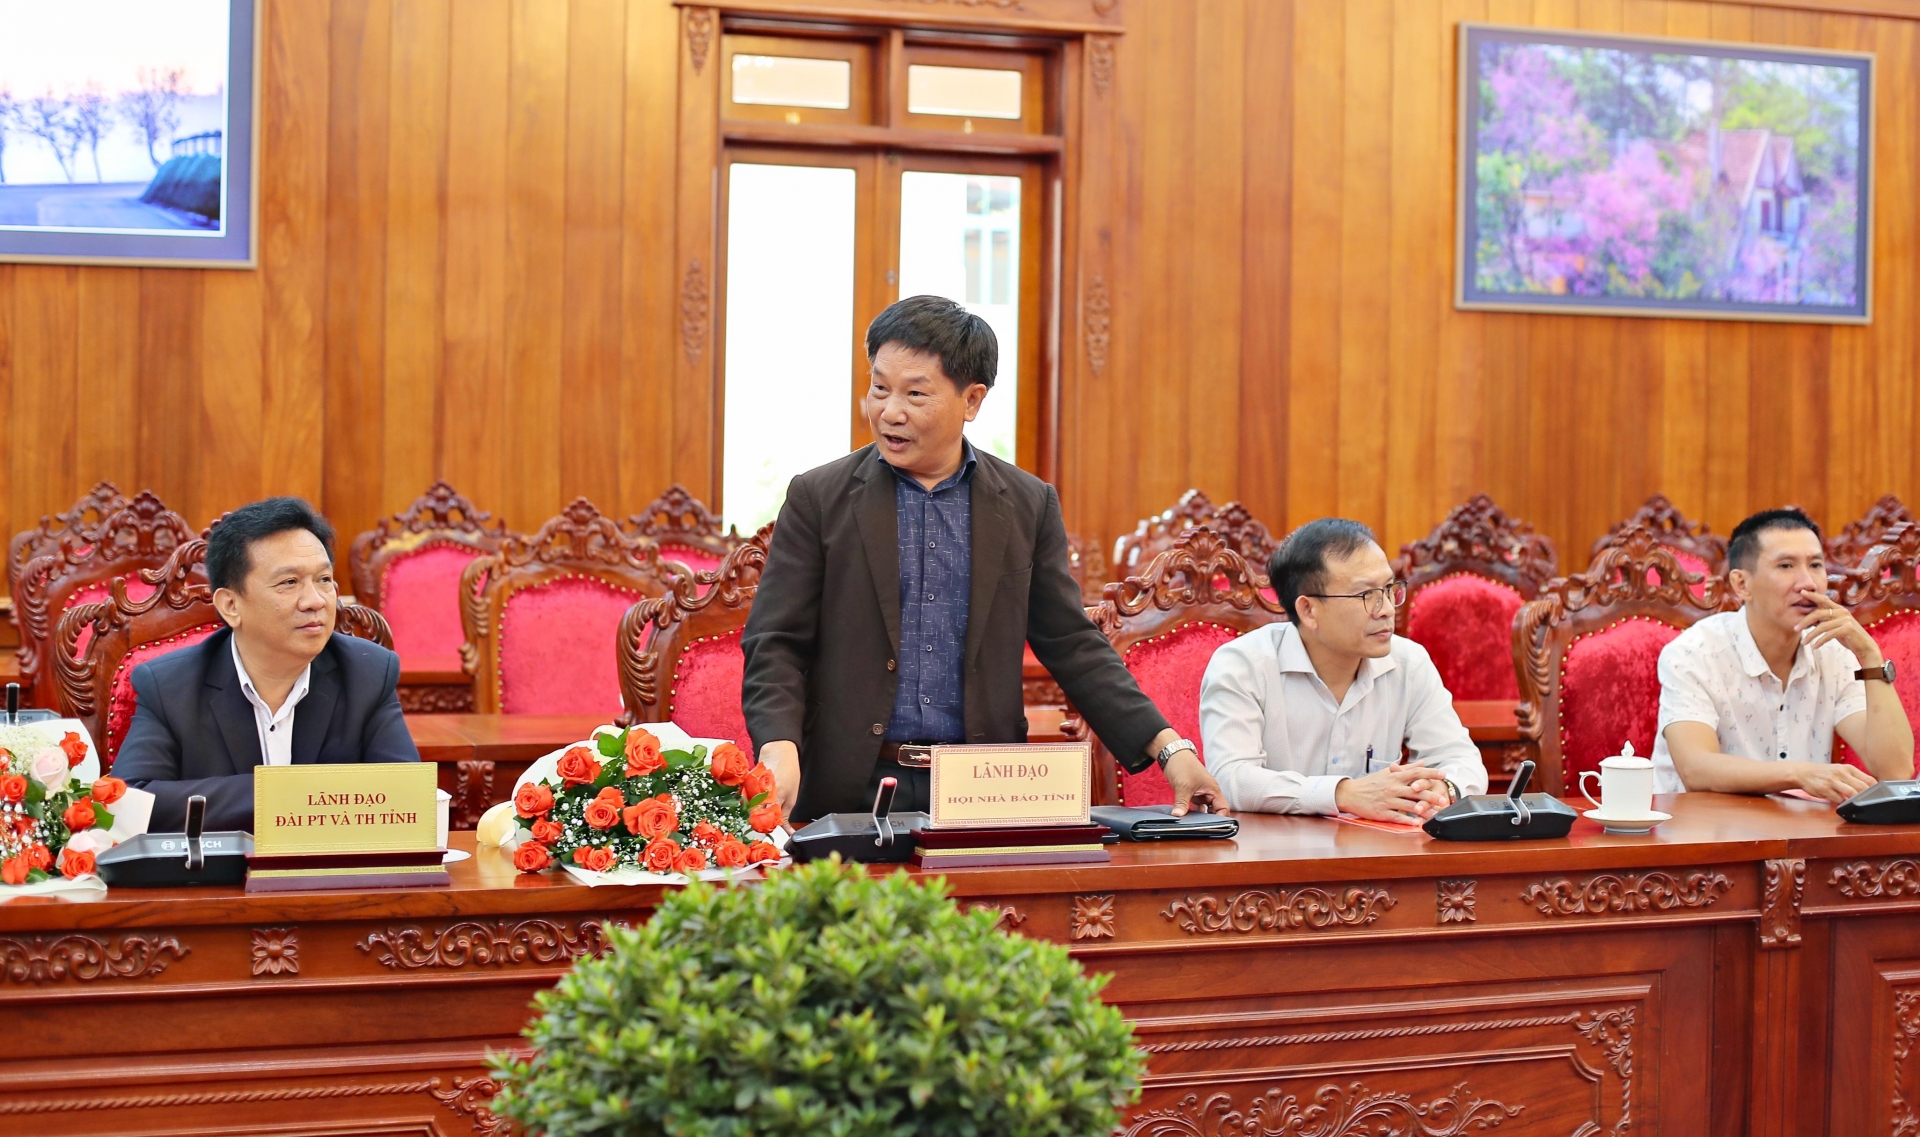 Chủ tịch Hội Nhà báo Lâm Đồng Lê Văn Tòa phát biểu cảm ơn sự quan tâm của lãnh đạo tỉnh tại buổi gặp mặt